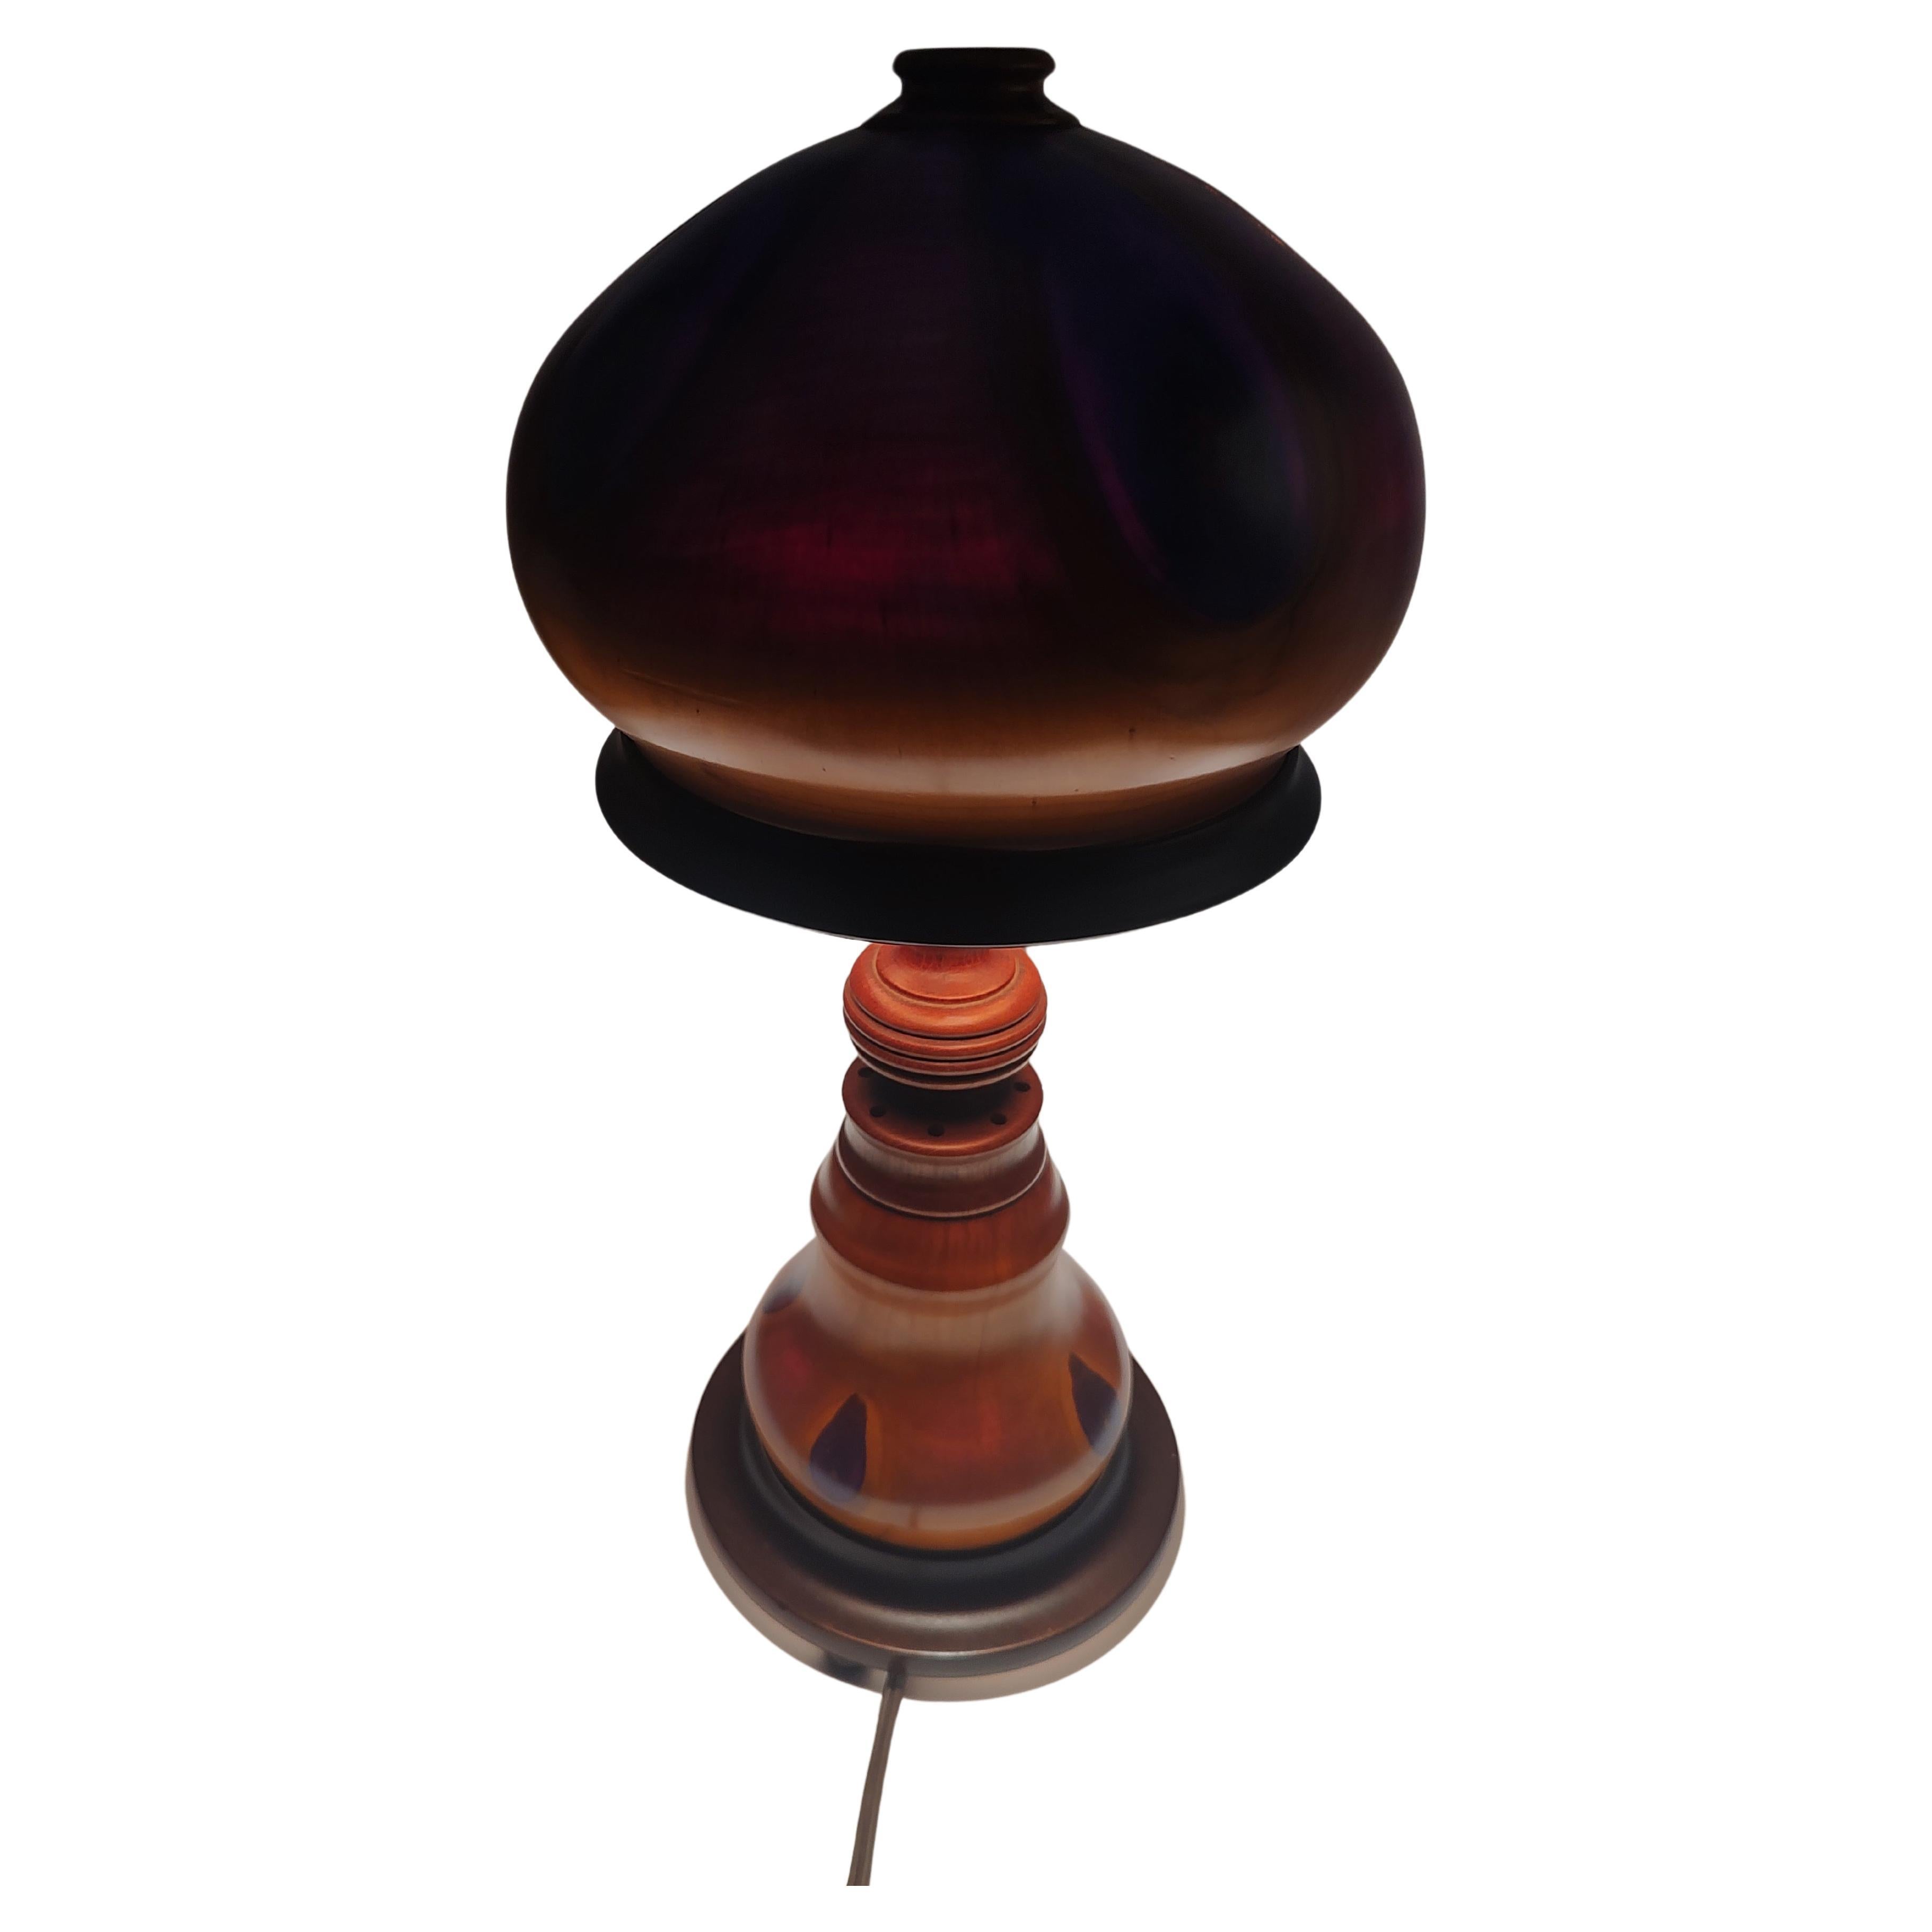 Fabelhafte handgeschnitzte exotische Tischlampe aus Holz (Bee & Schirm) aus der österreichischen Art Deco Ära. Schirm und Basis leuchten beide und erzeugen mit den ausgehöhlten Teilen einen violett-blau-roten Regenbogen.
Die Lampe ist eine